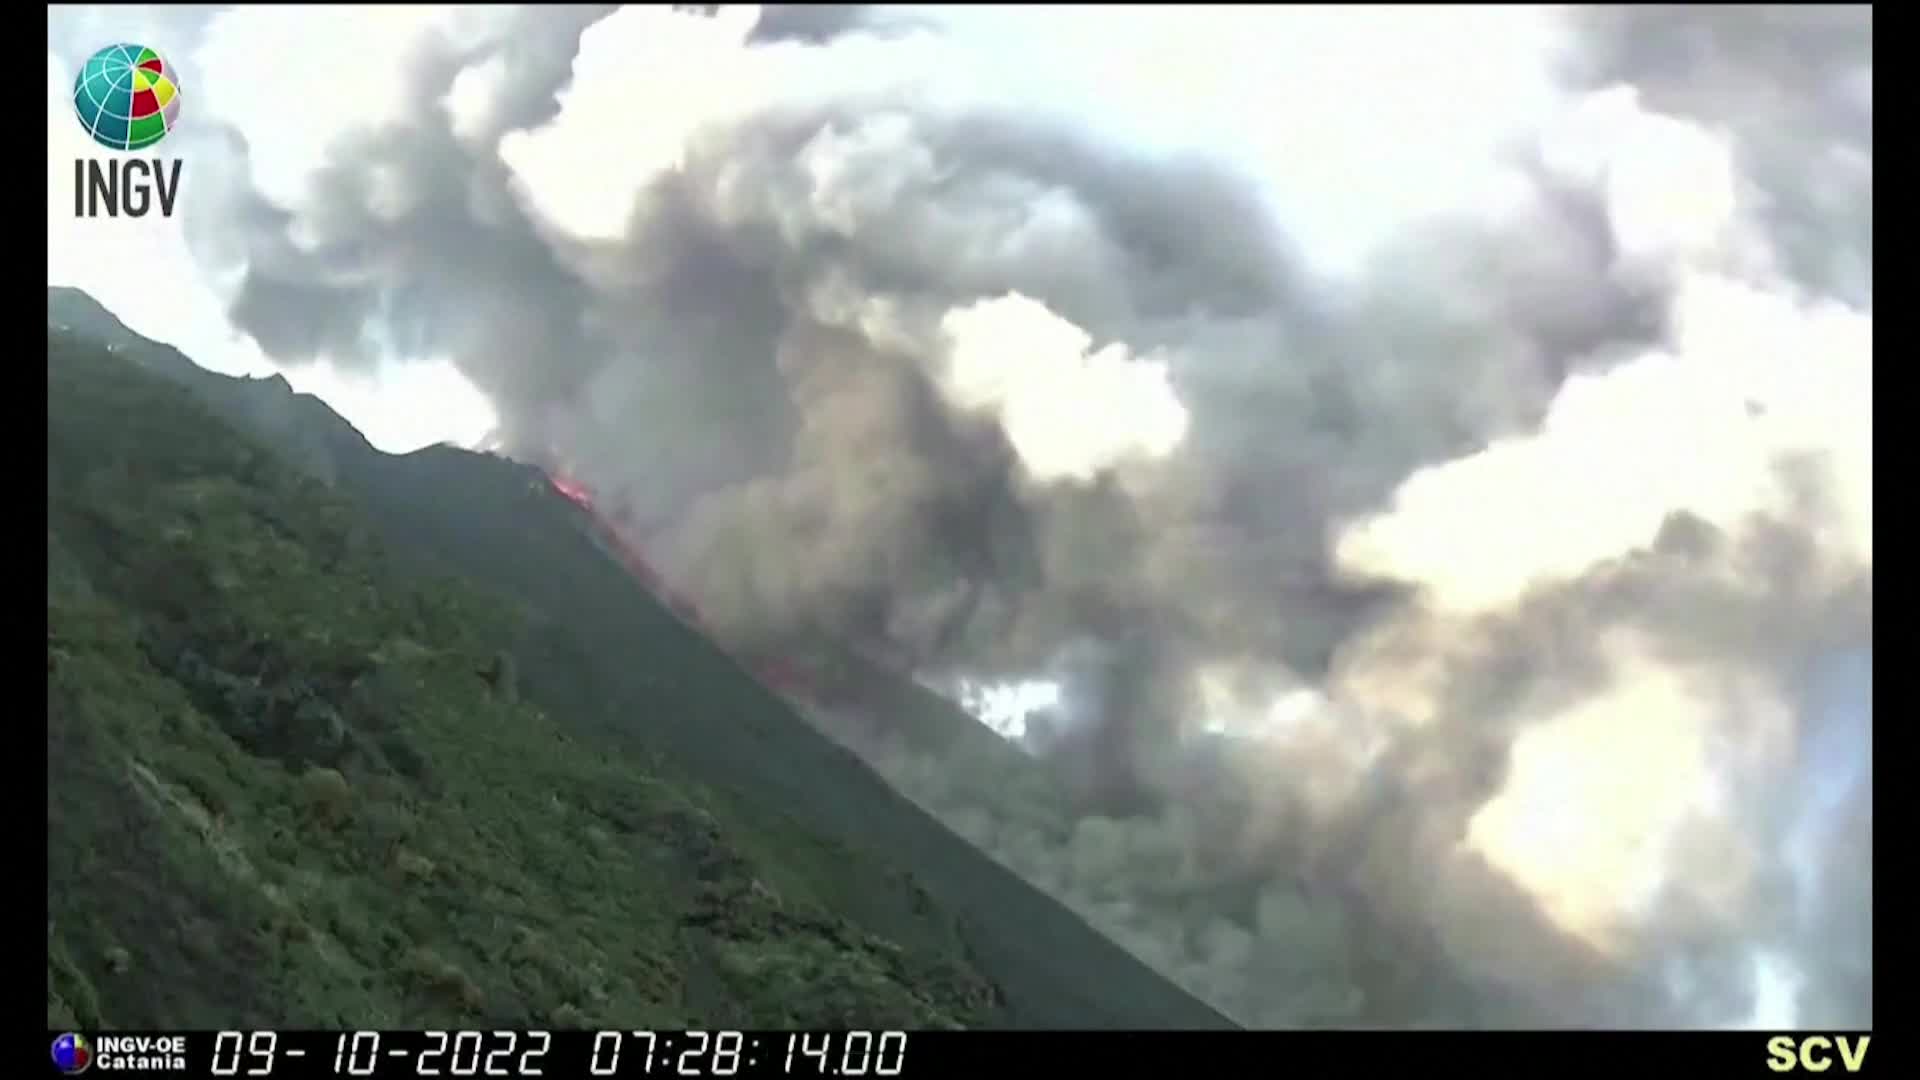 Изригването на вулкана Стромболи предизвика сеизмичен сигнал (ВИДЕО)